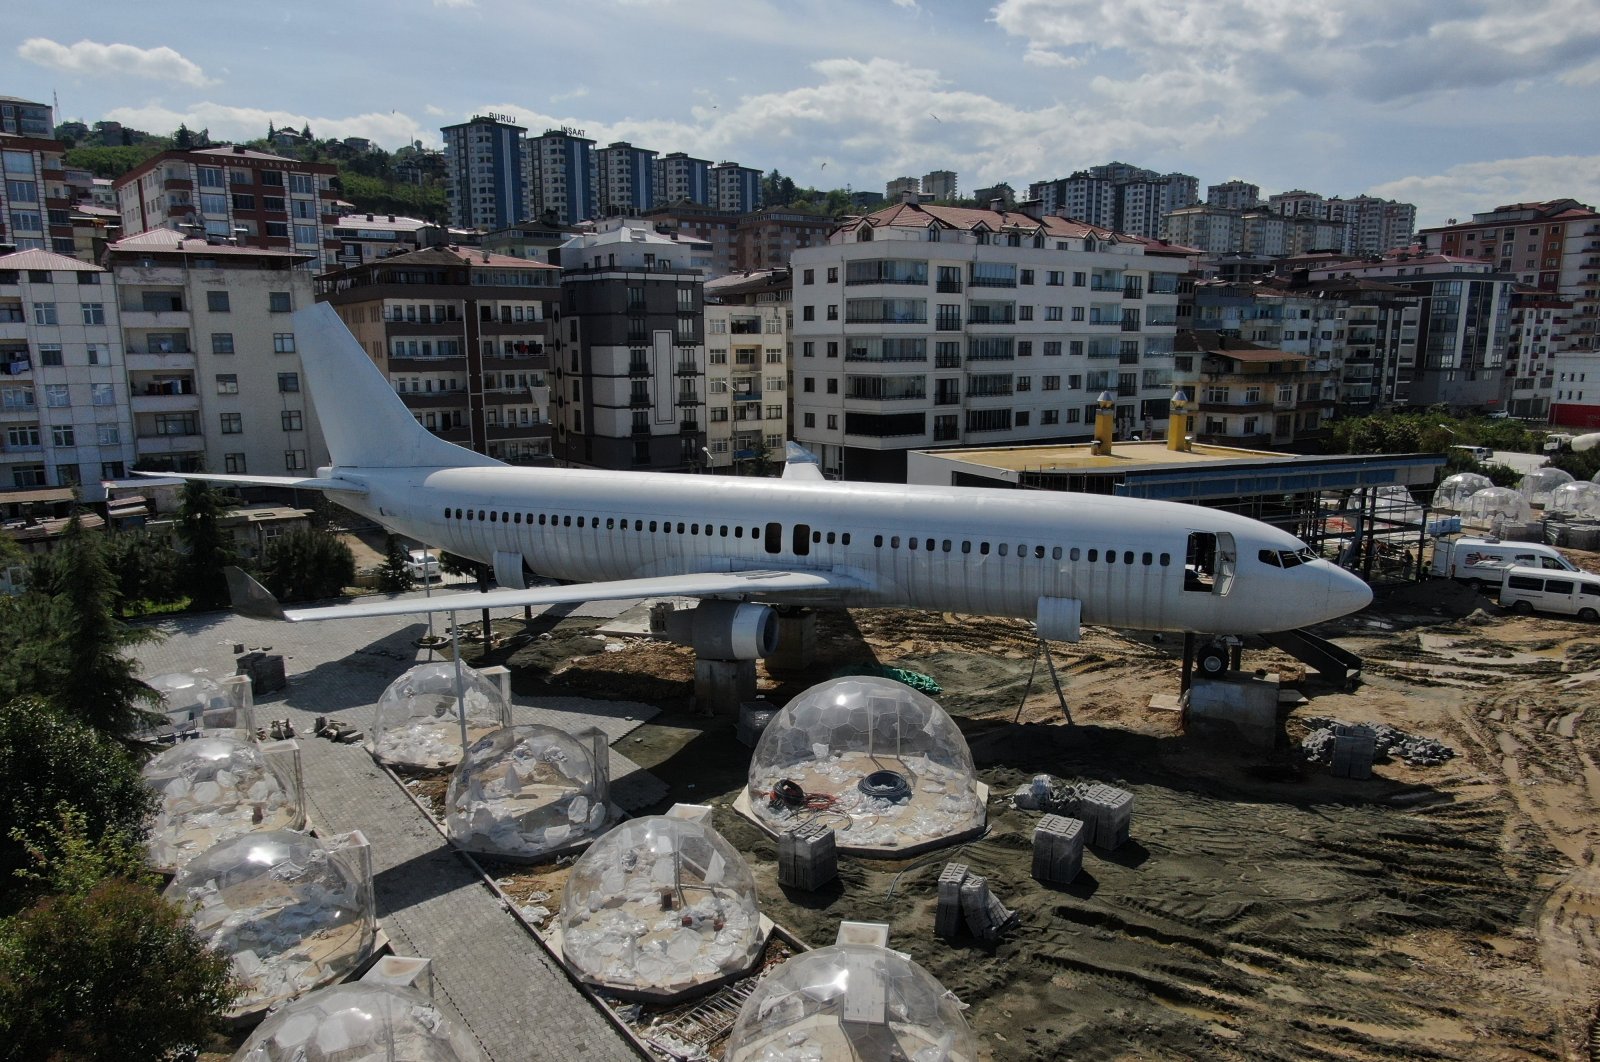 Pide on board: Pesawat yang berfungsi sebagai pita lounge di Trabzon Türkiye